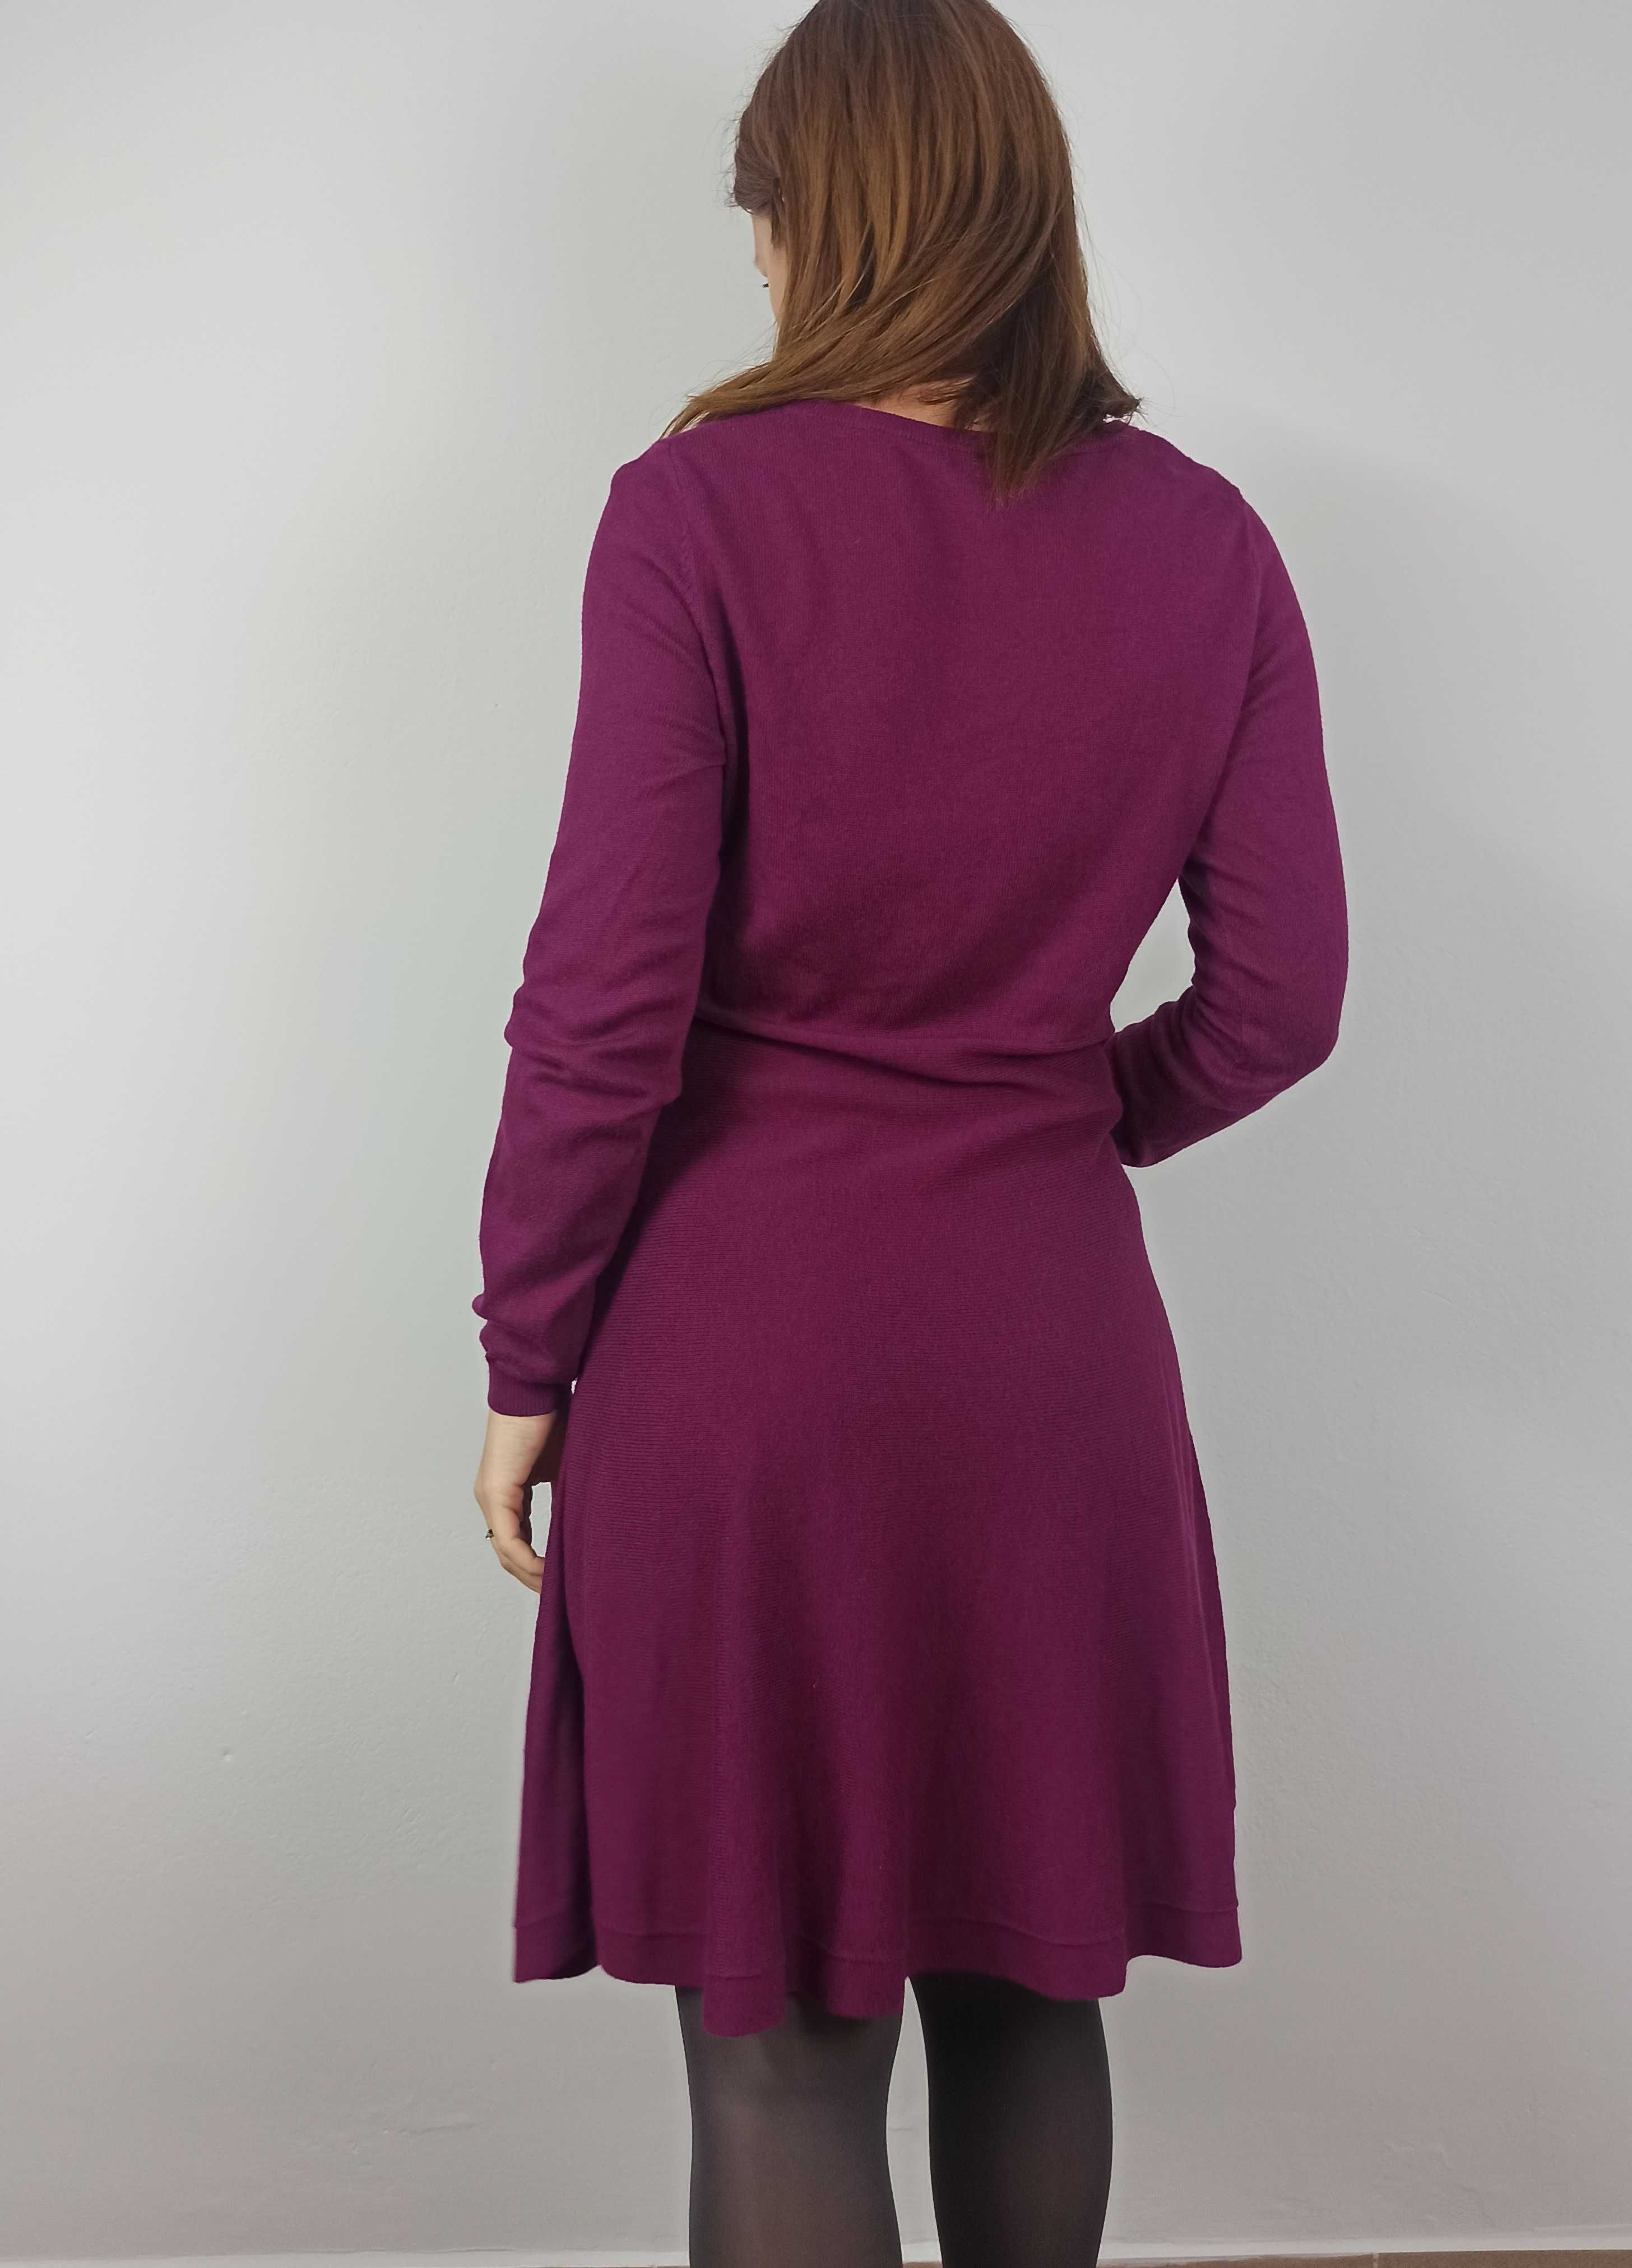 Fioletowa dżersejowa sukienka ciążowa H&m mama  M 38